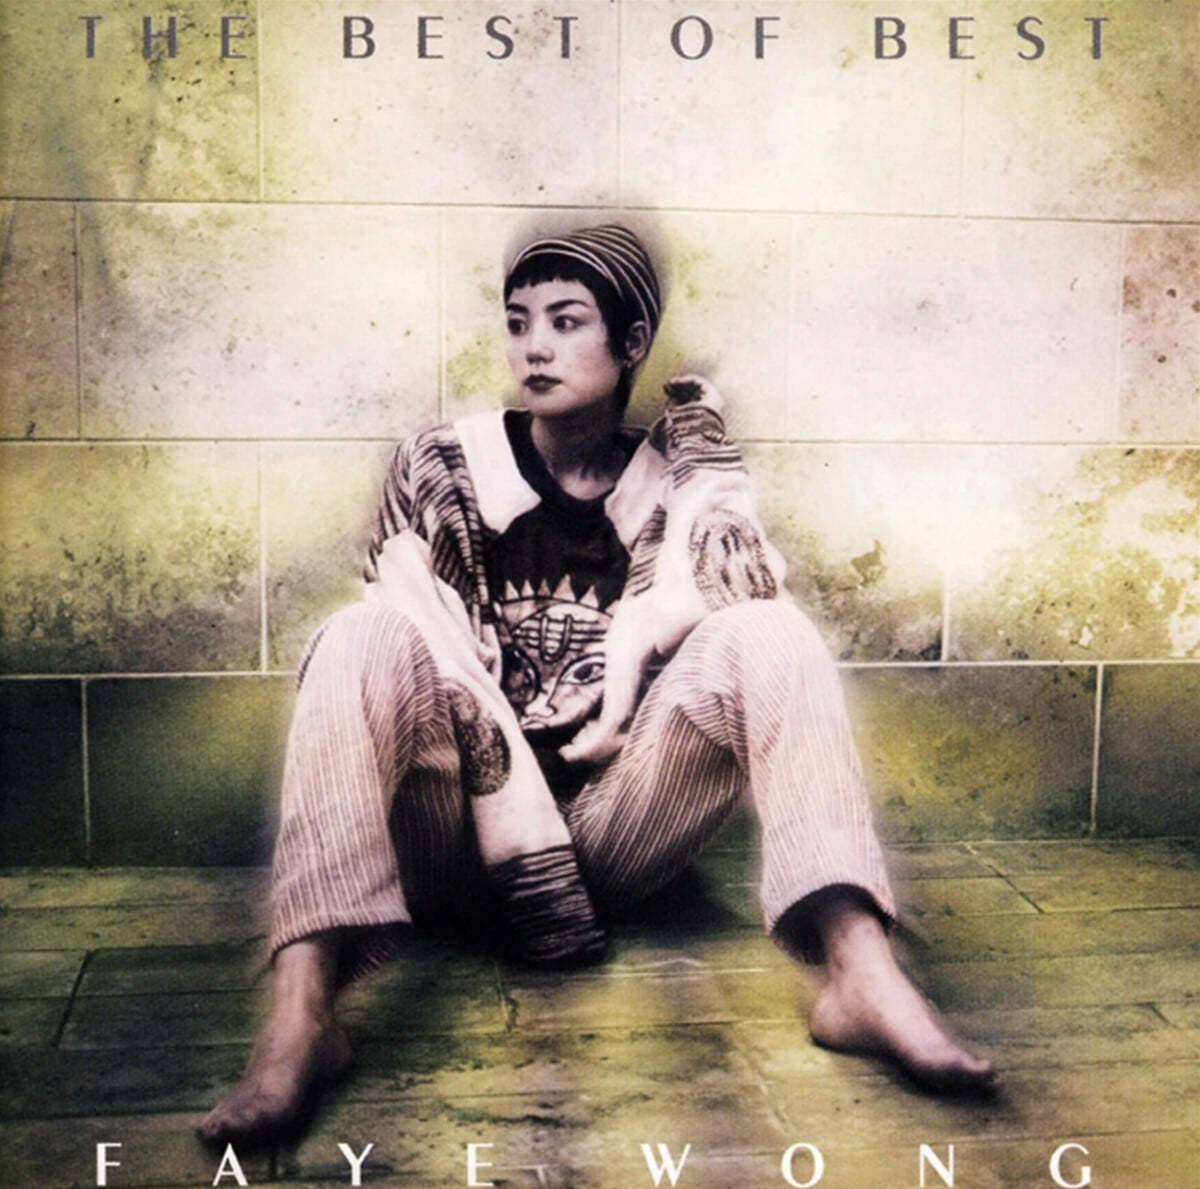 王菲 (왕비, Faye Wong) - Best of Best [2LP] 